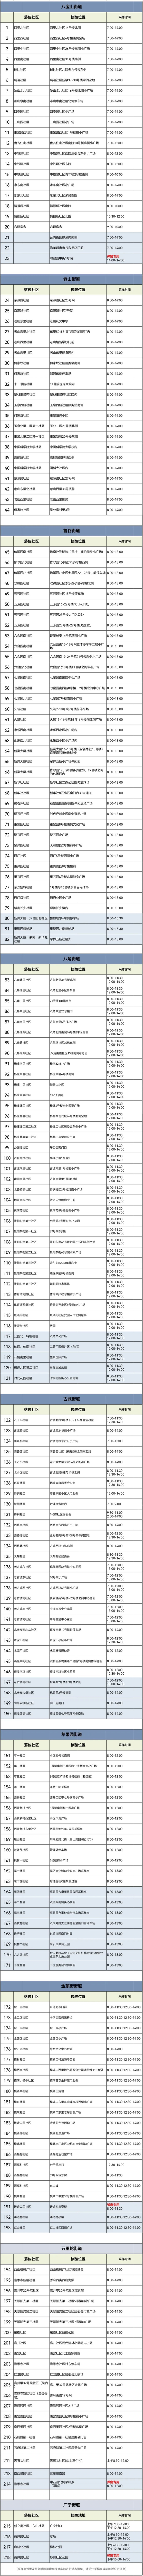 北京昨日新增本土新冠感染者1282＋3240含社会面609例歌曲说走就走一回为什么英语魔方秀上传不了